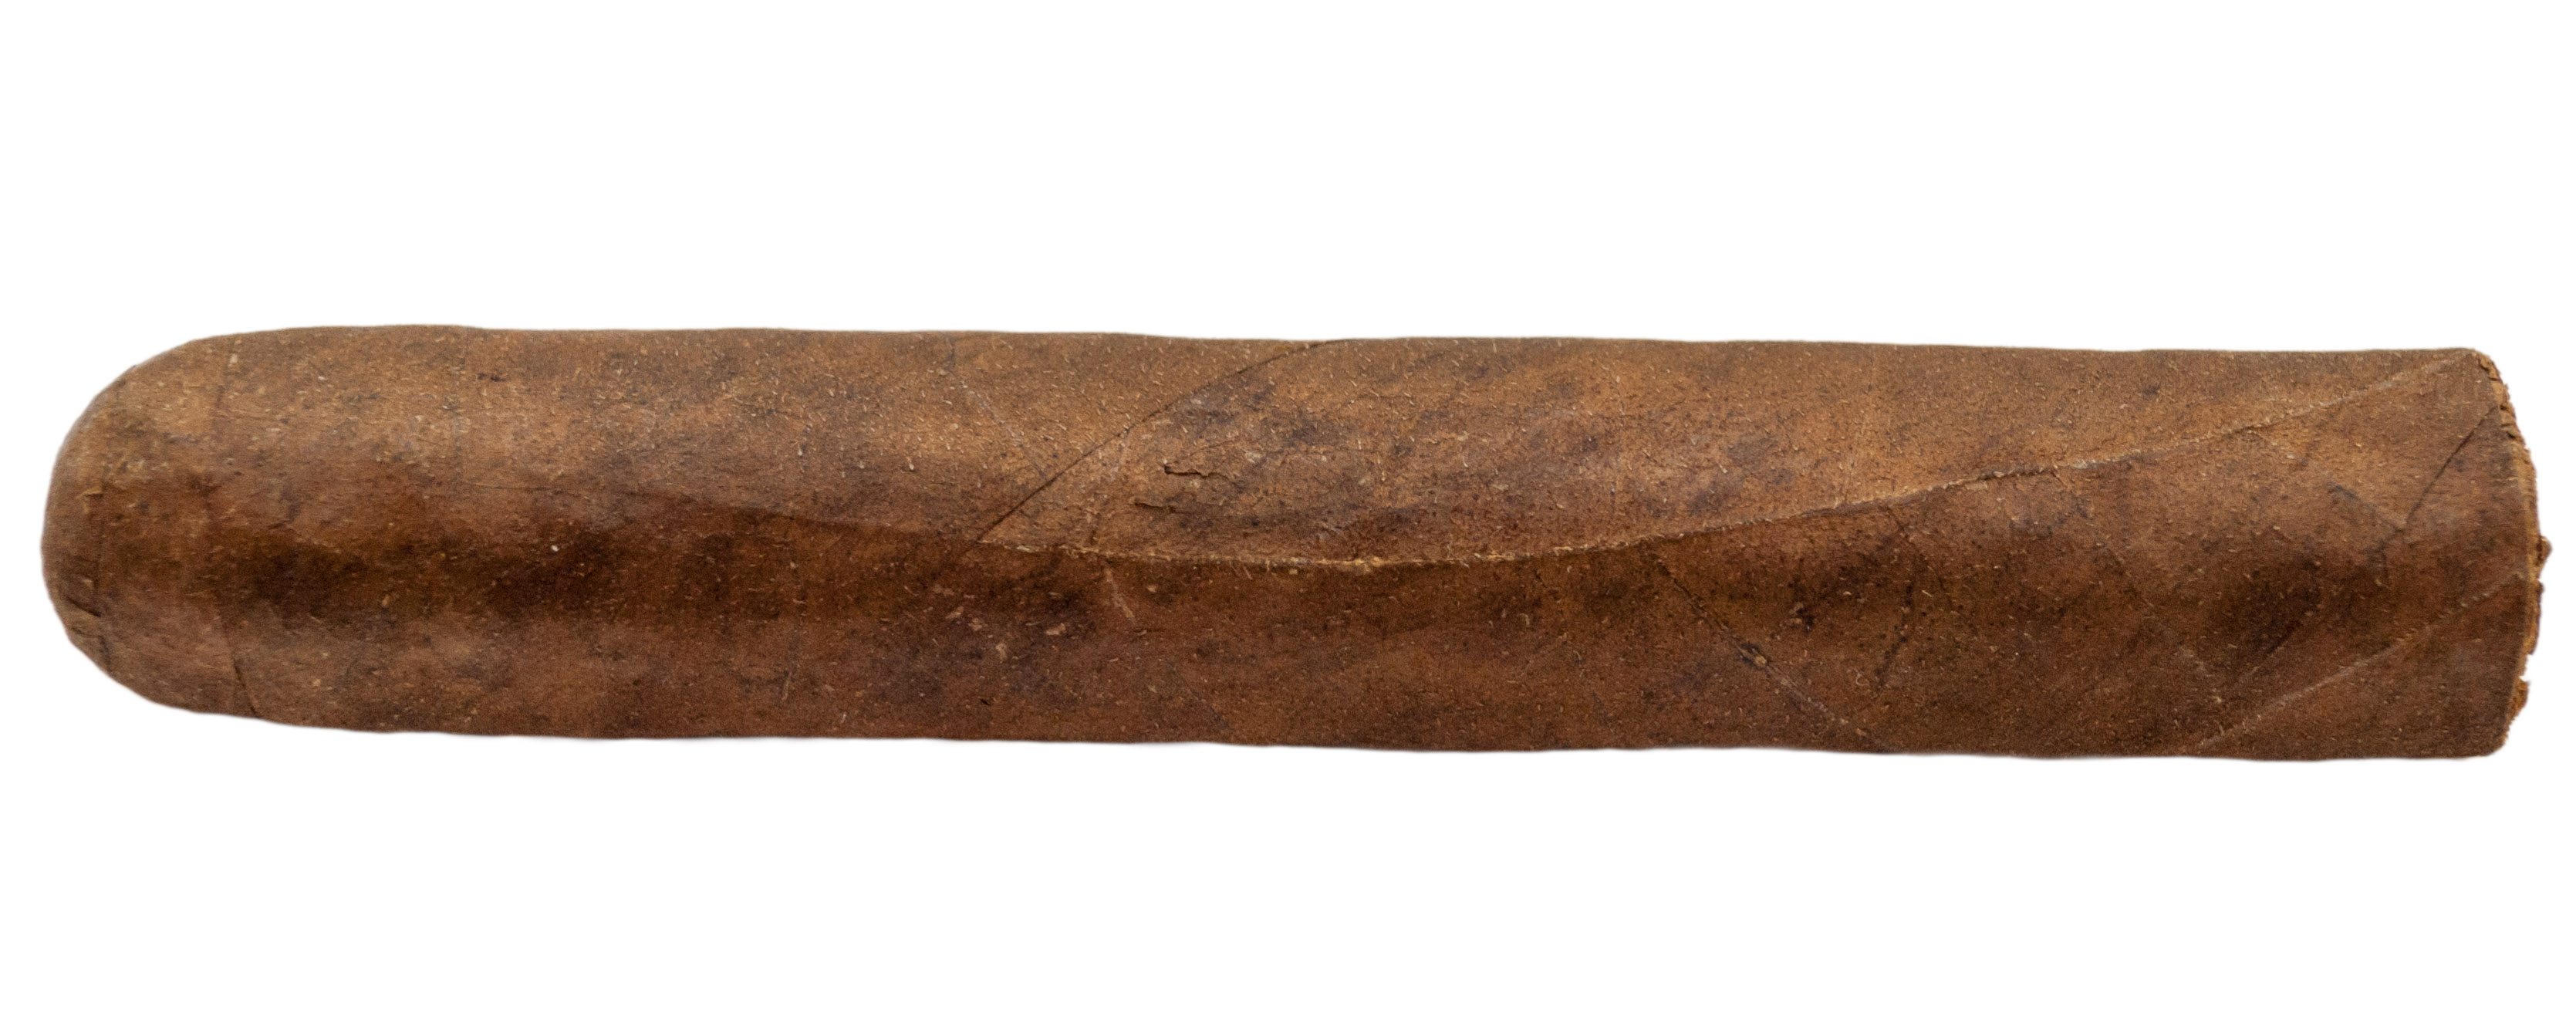 analyseren sneeuw ethisch Blind Cigar Review: Jas Sum Kral | Toothpick 2.0 Maduro